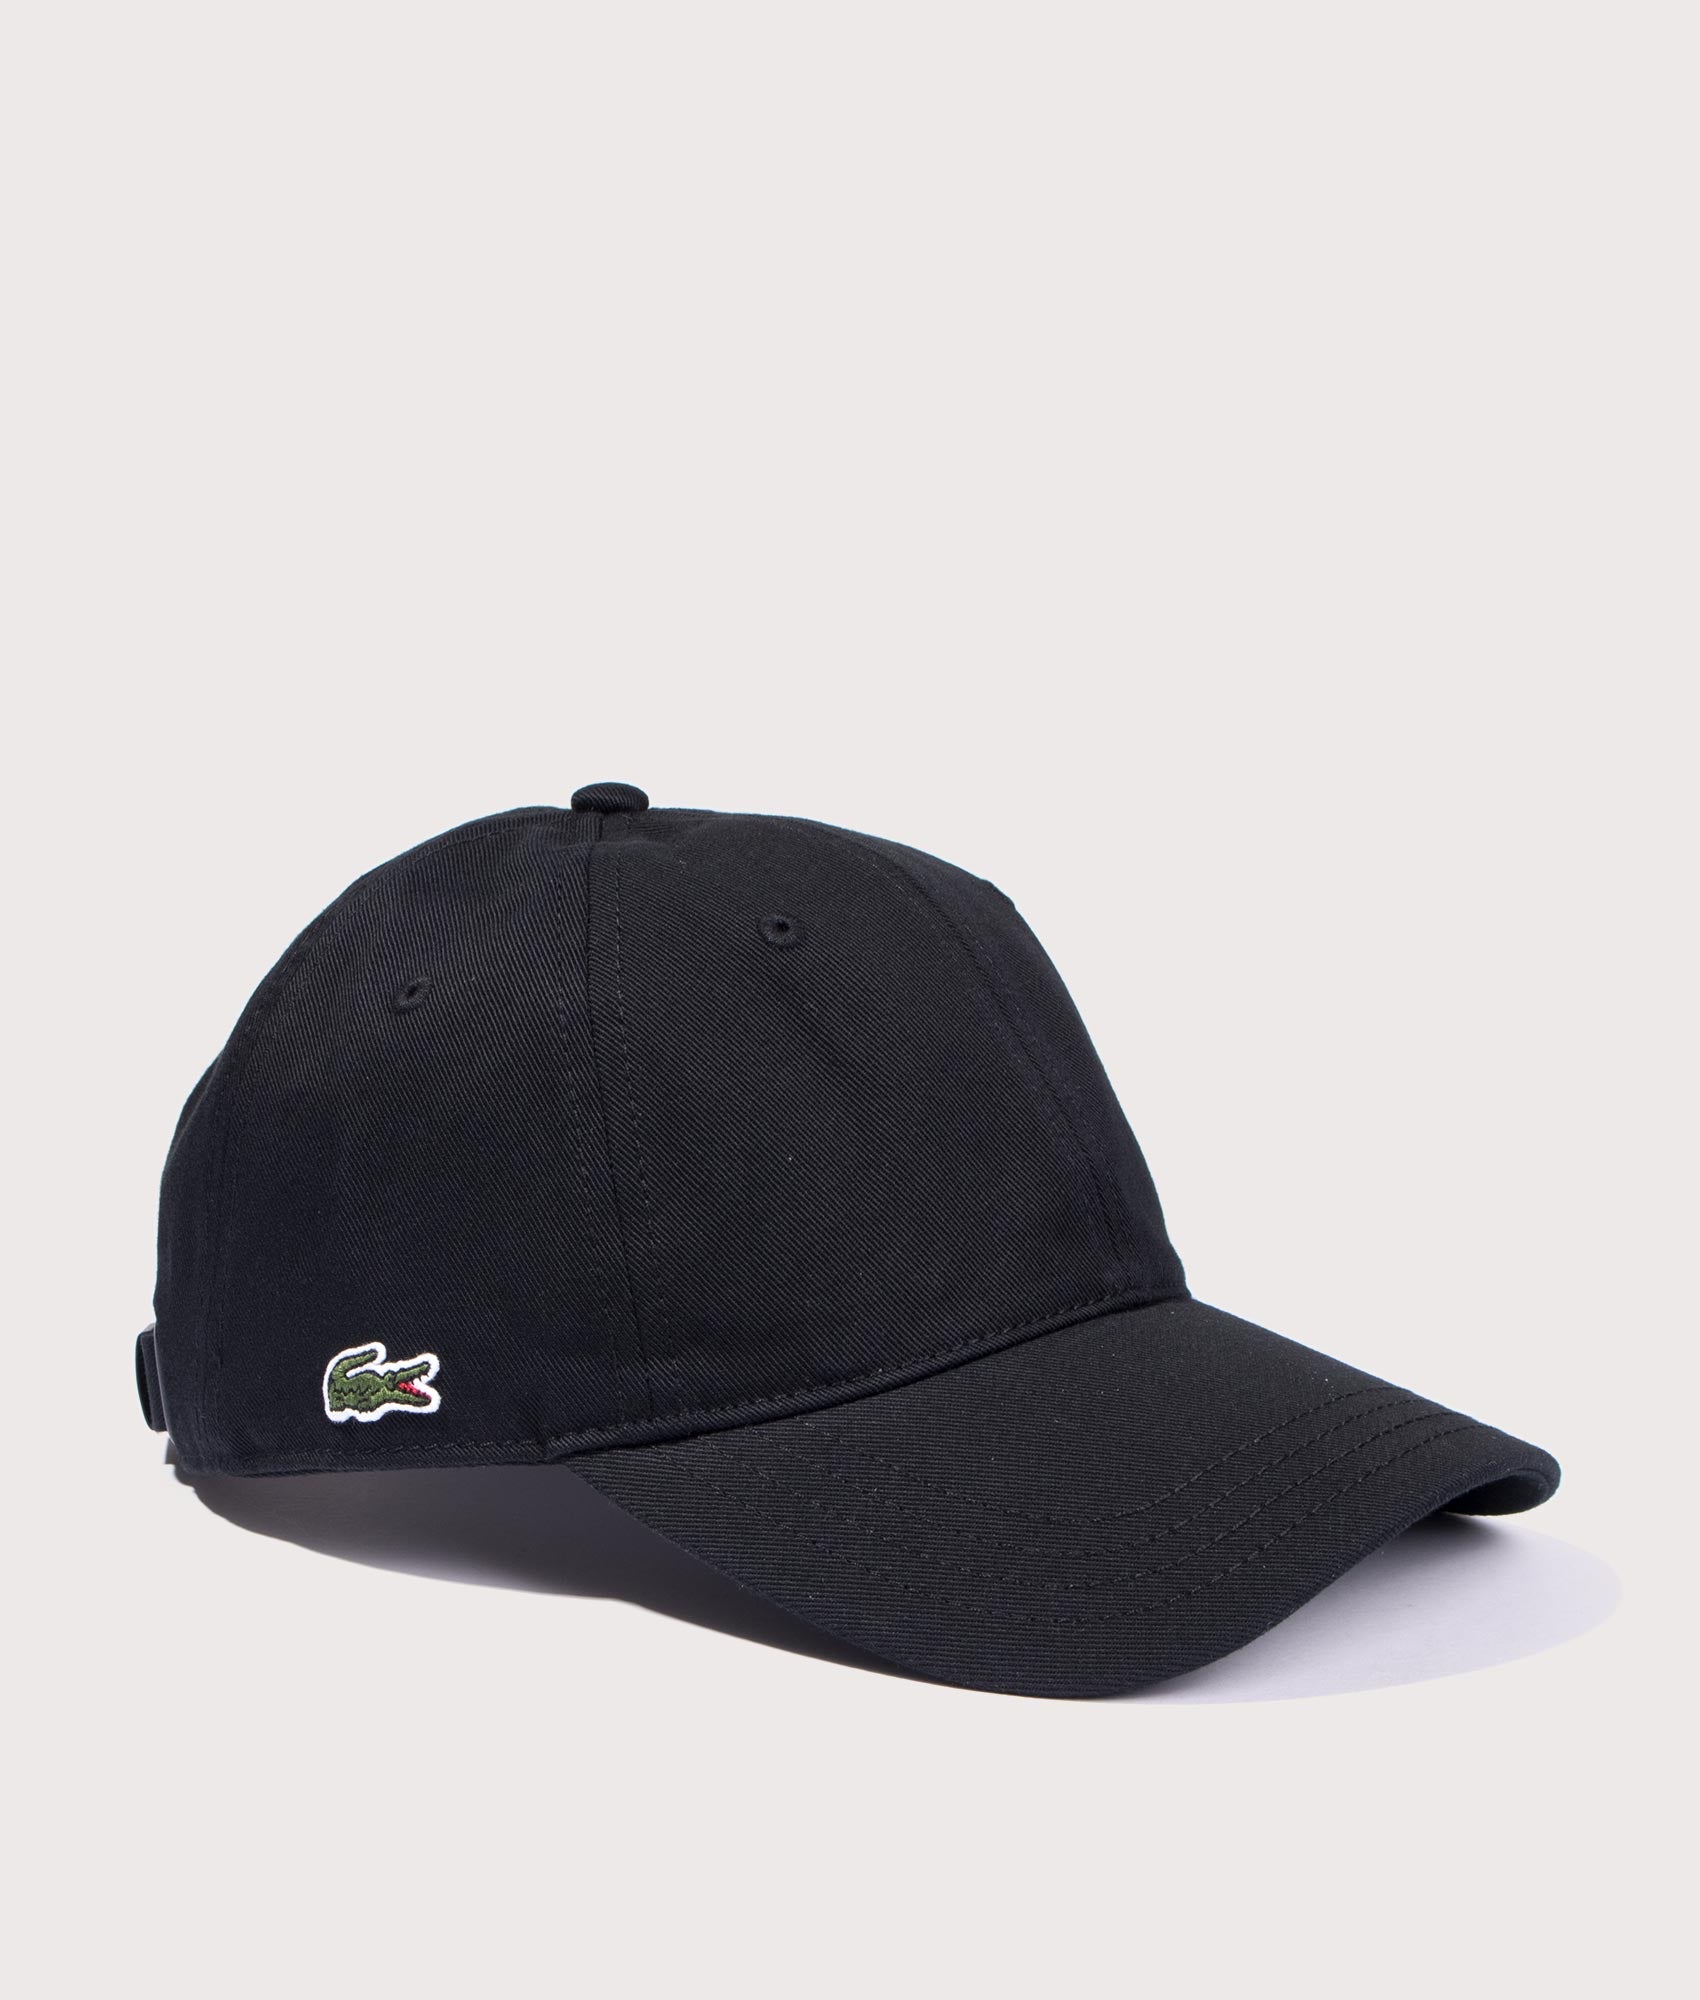 Lacoste Mens Cotton Twill Cap - Colour: 031 Black - Size: One Size